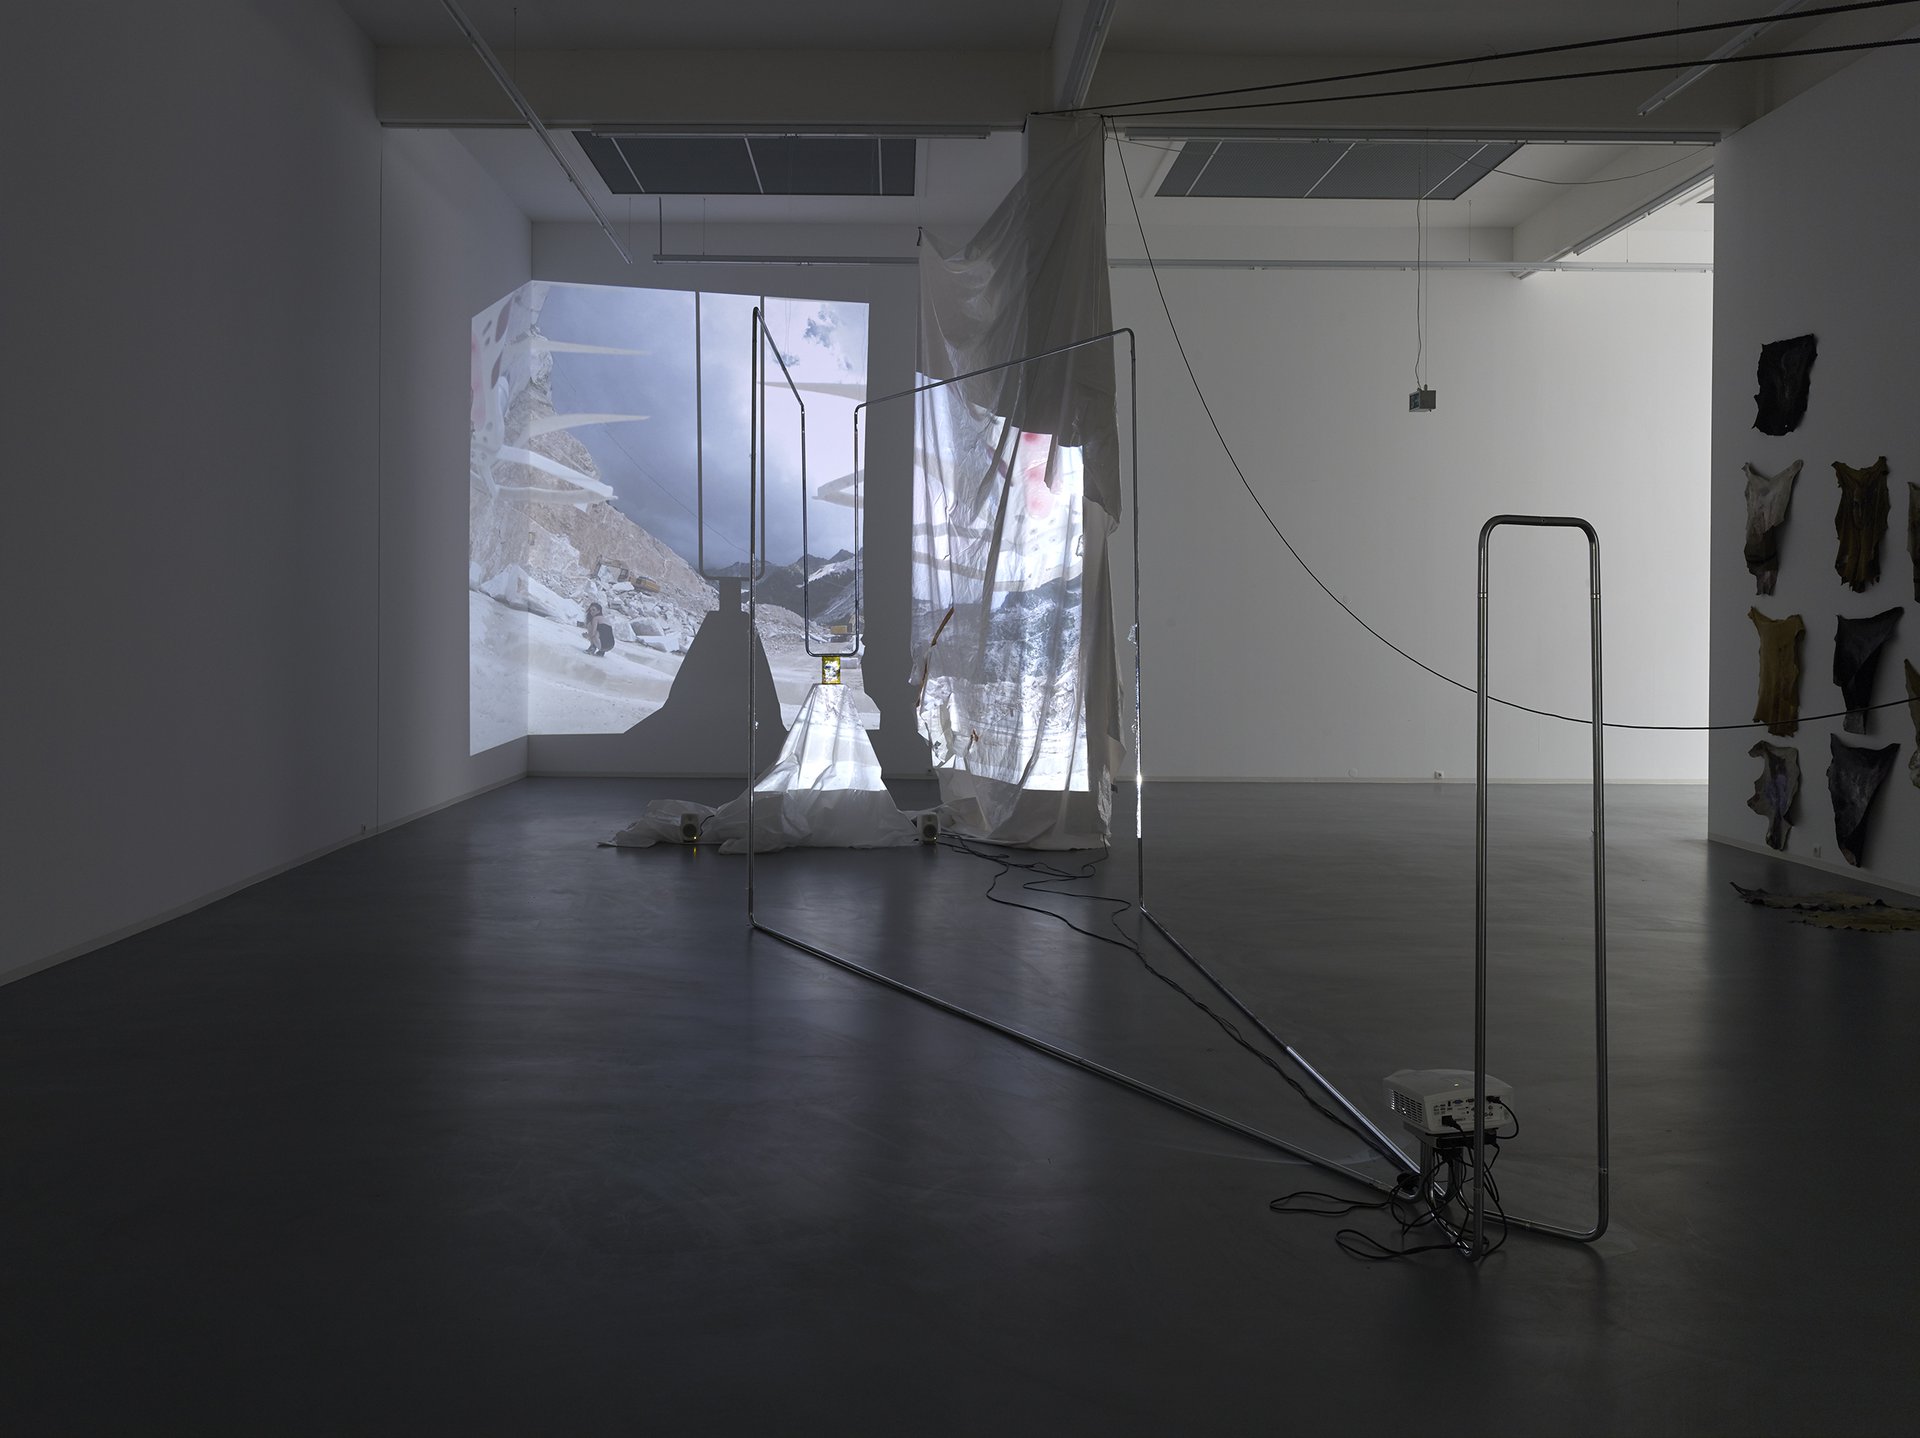 Raphaela Vogel, installation view, 2015, Bonner Kunstverein, Courtesy of the artist and BQ, Berlin. Photo: Simon Vogel